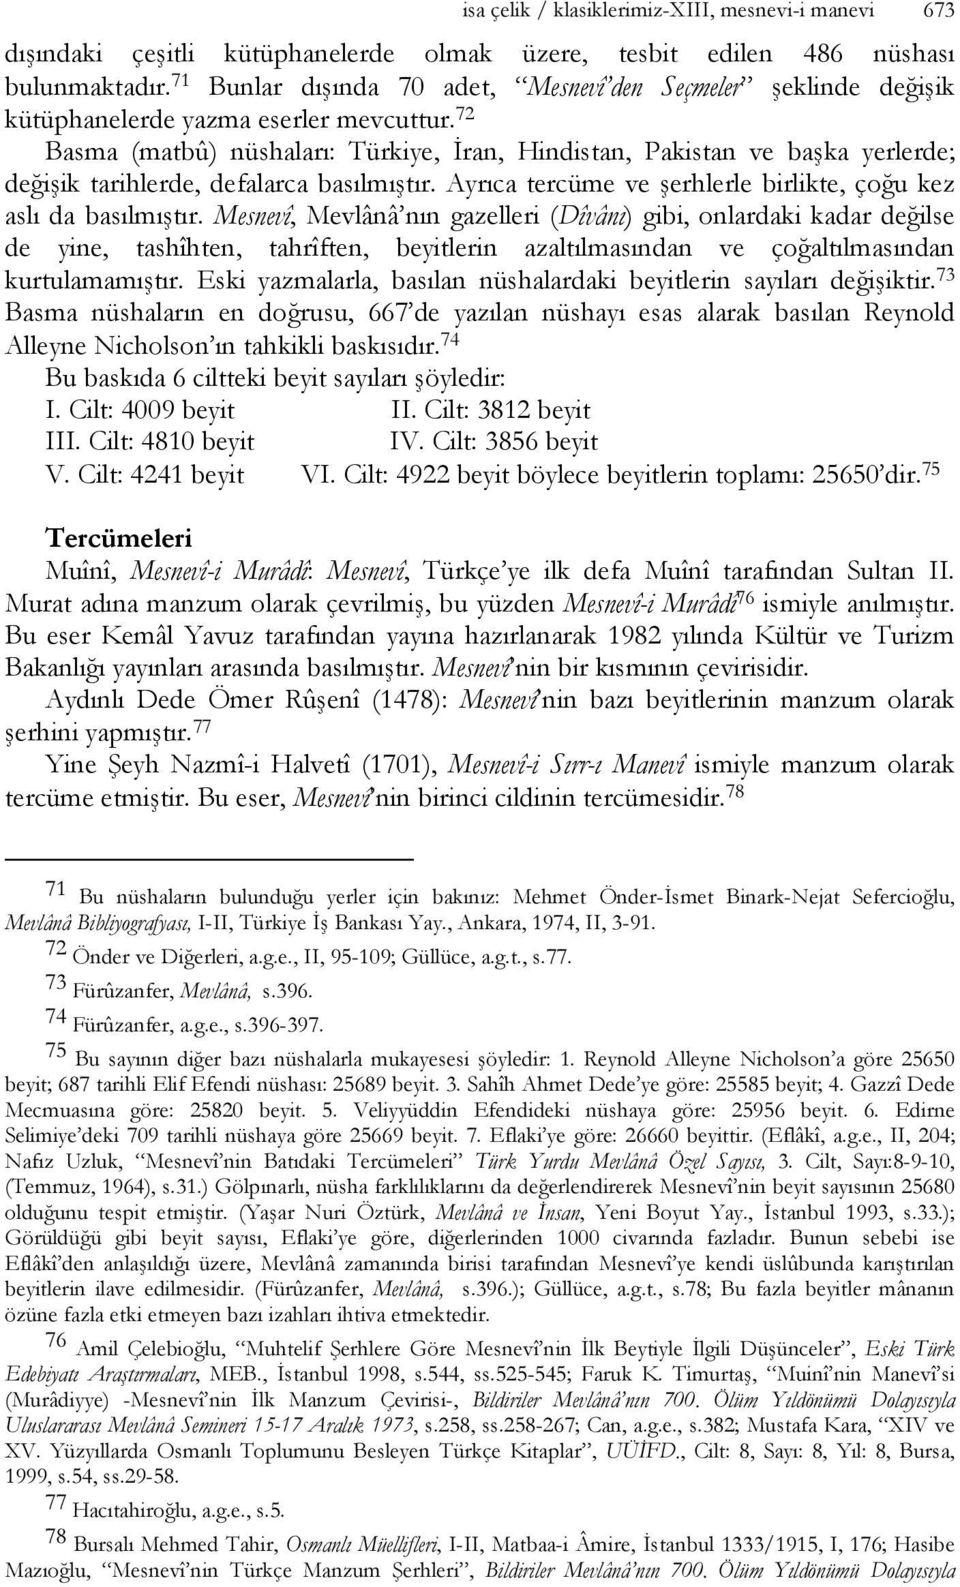 72 Basma (matbû) nüshaları: Türkiye, İran, Hindistan, Pakistan ve başka yerlerde; değişik tarihlerde, defalarca basılmıştır. Ayrıca tercüme ve şerhlerle birlikte, çoğu kez aslı da basılmıştır.